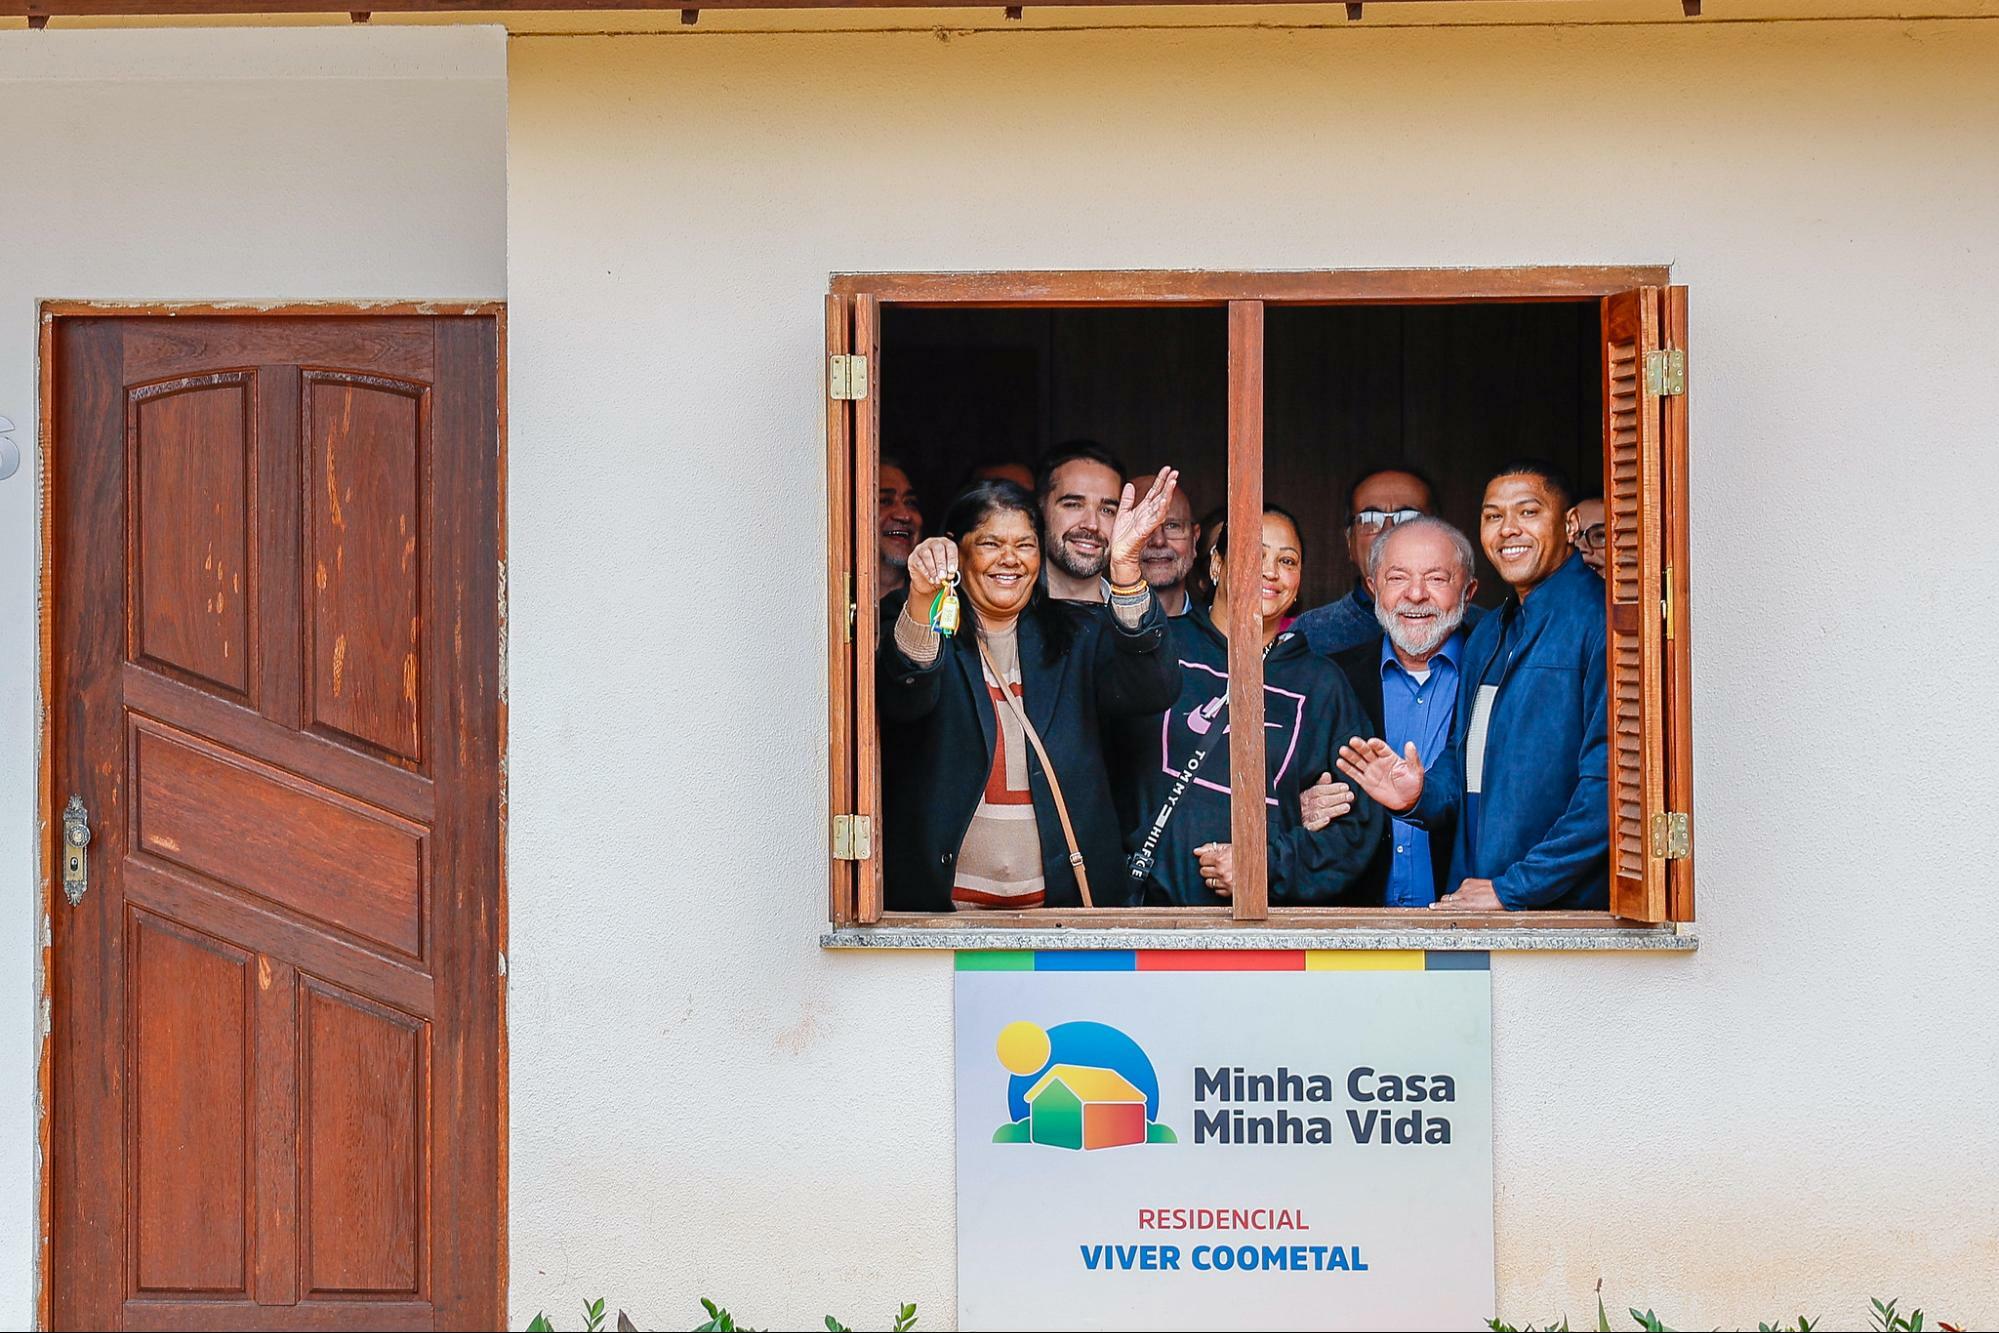 Fachada de casa do projeto Minha Casa, Minha Vida. Na janela, o presidente Lula e o governador do Rio Grande do Sul, Eduardo Leite, sorriem ao lado de um grupo de pessoas.